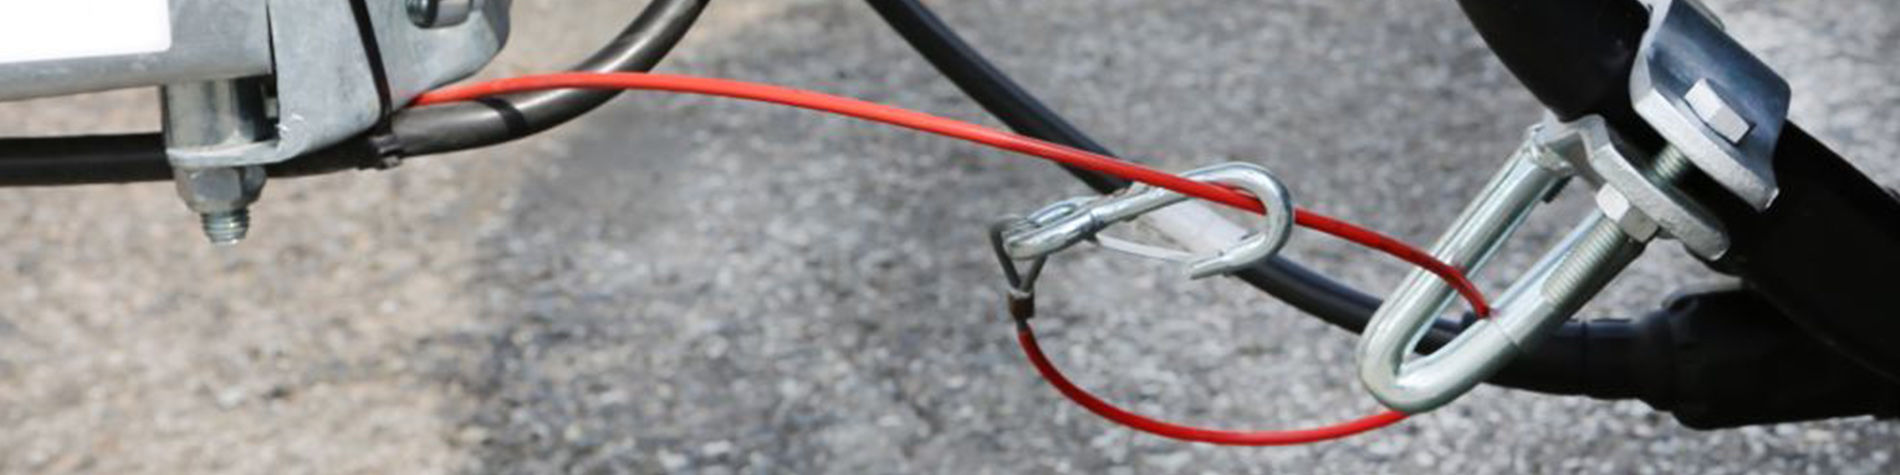 Cordes et cables de remorquage voiture